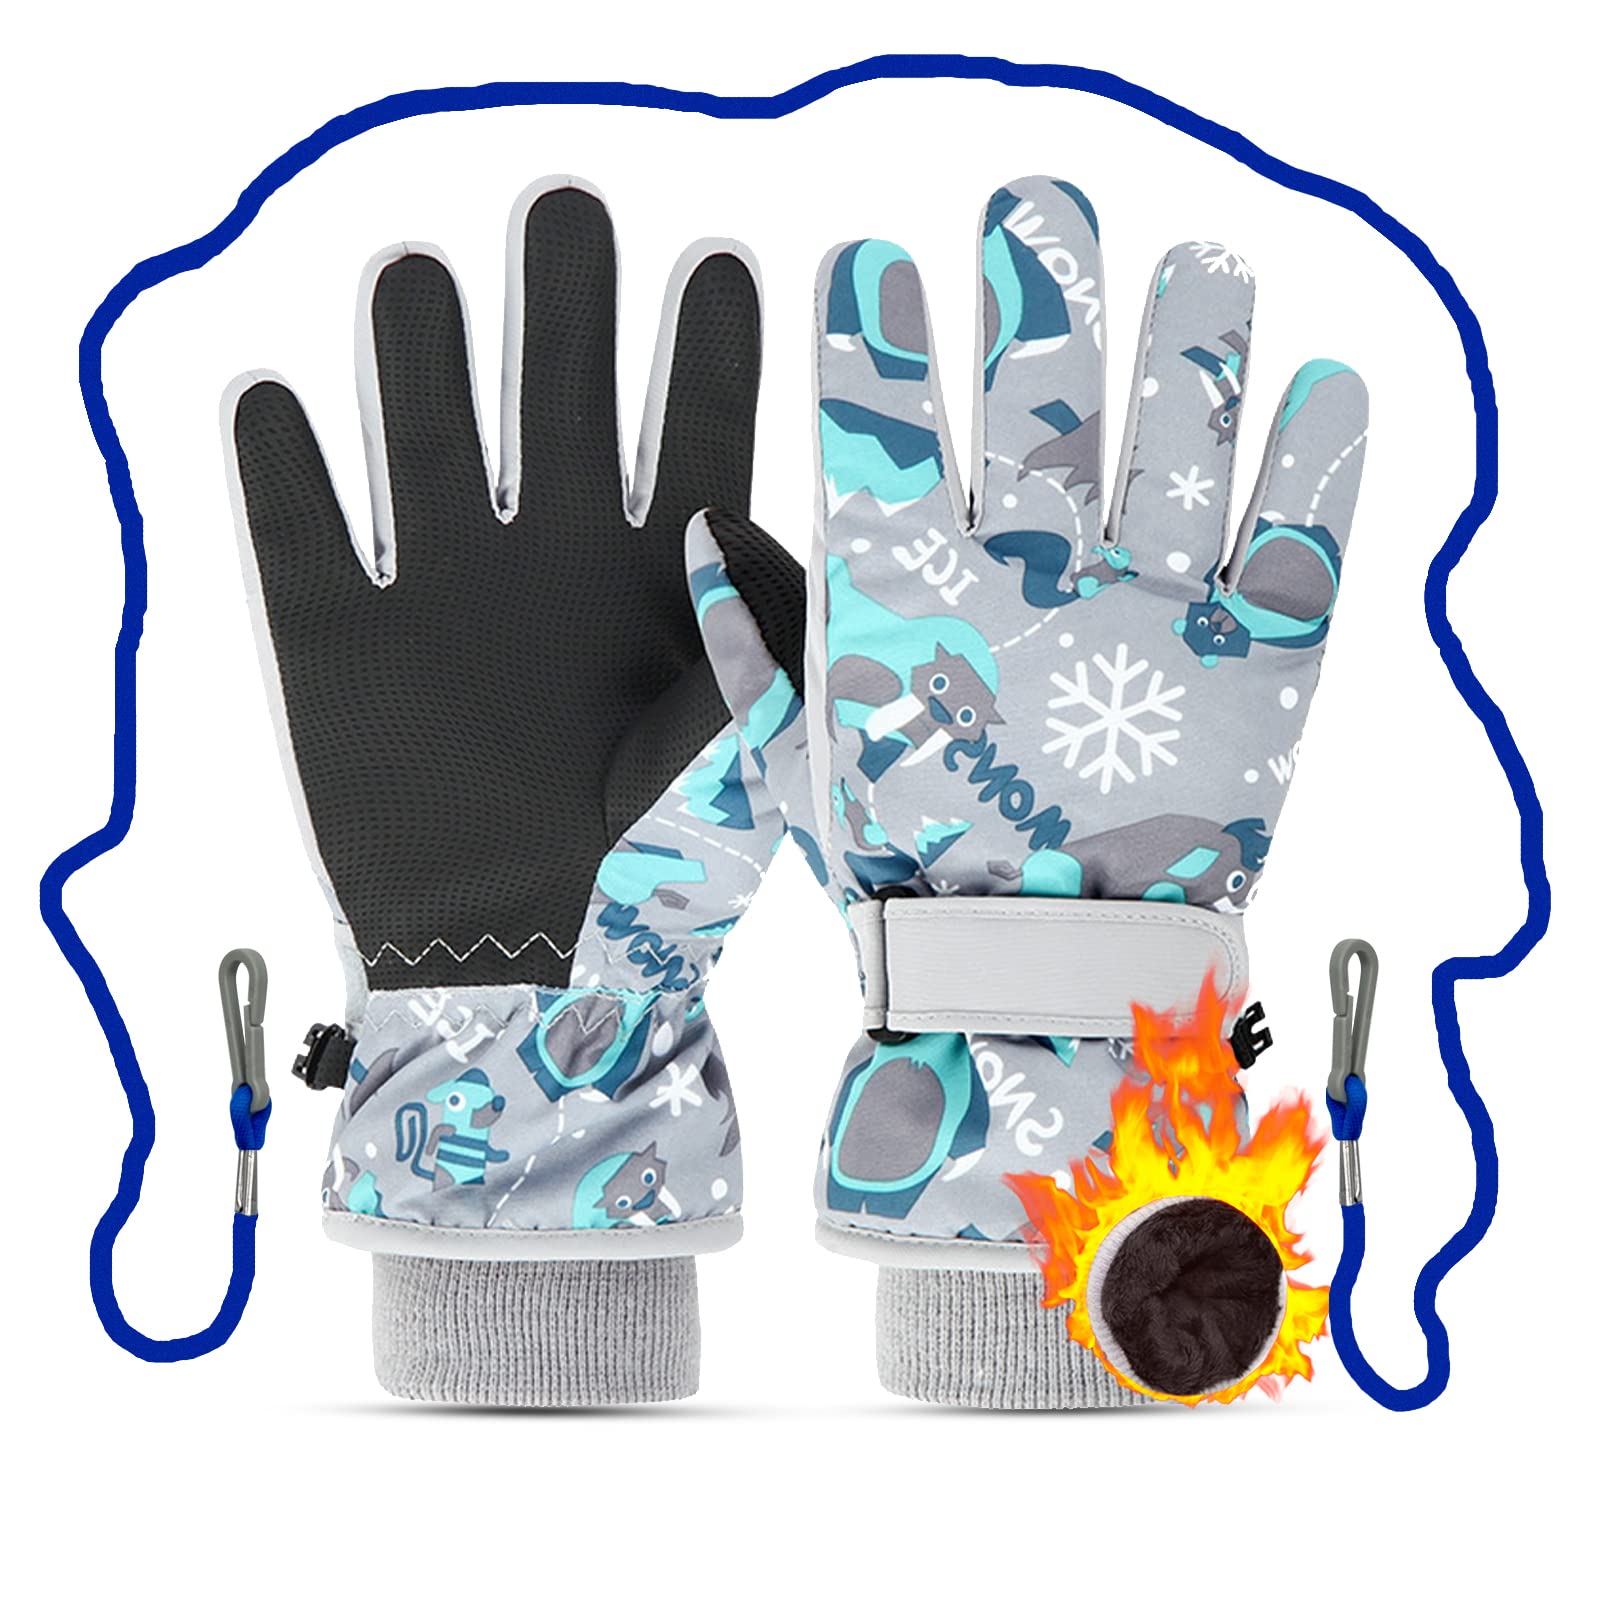 Caudblor Ski Gloves for Kids, Waterproof Winter Gloves for Boys